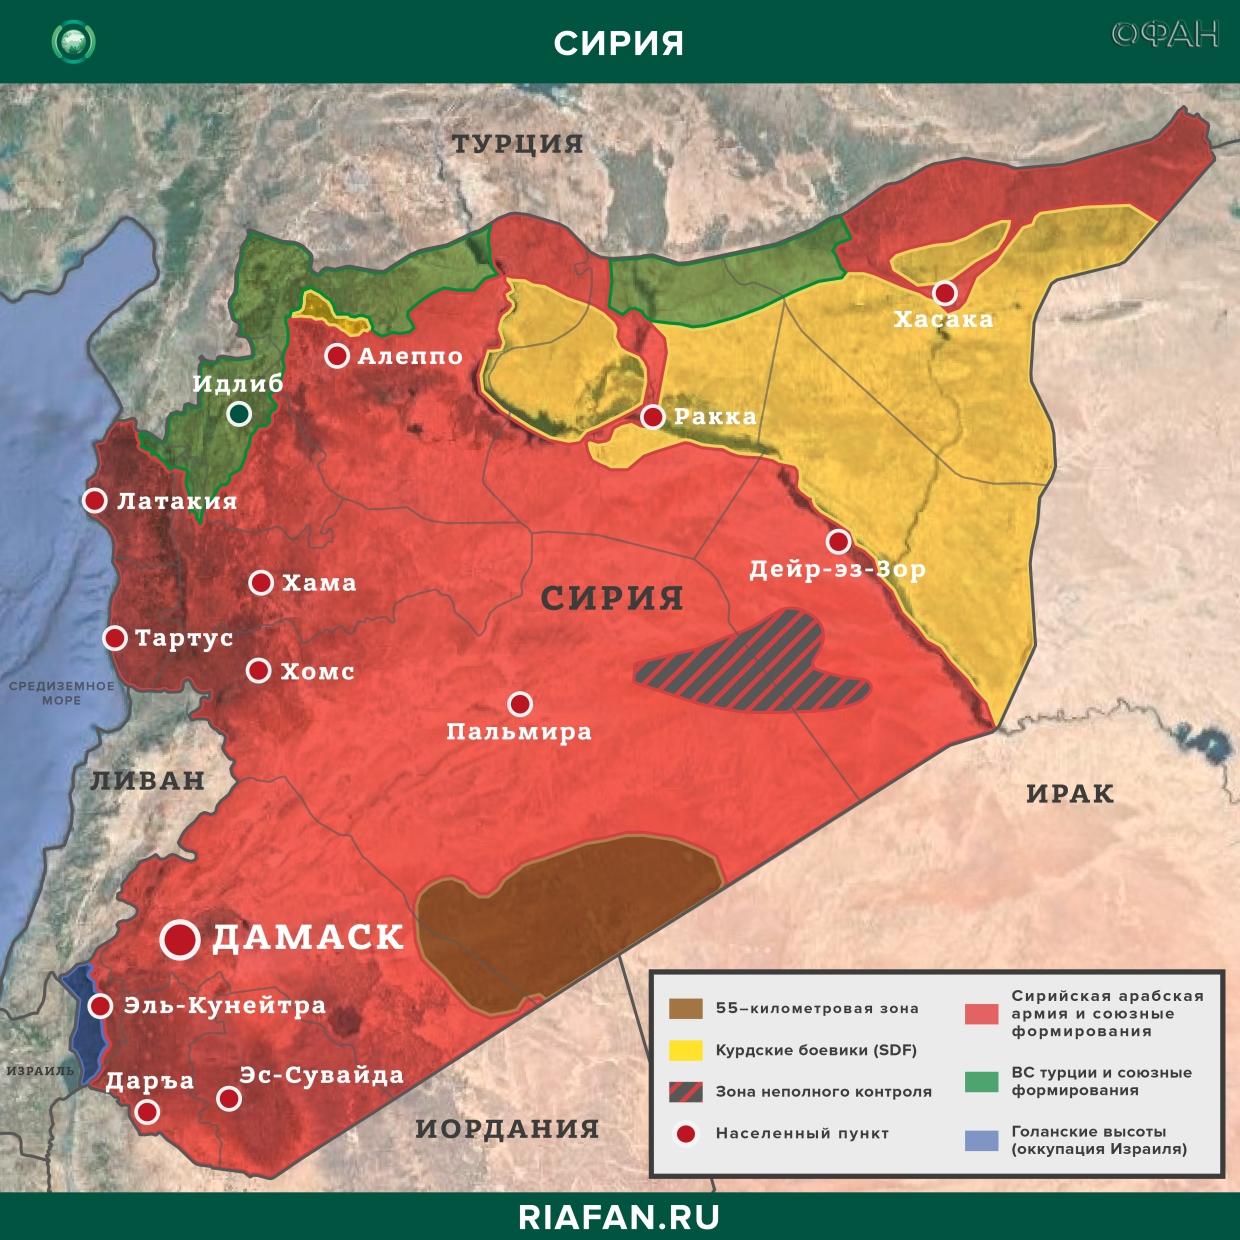 叙利亚每日结果 27 二月 06.00: взрыв в Дамаске, сирийская армия освободила свыше 30 поселений Идлиба